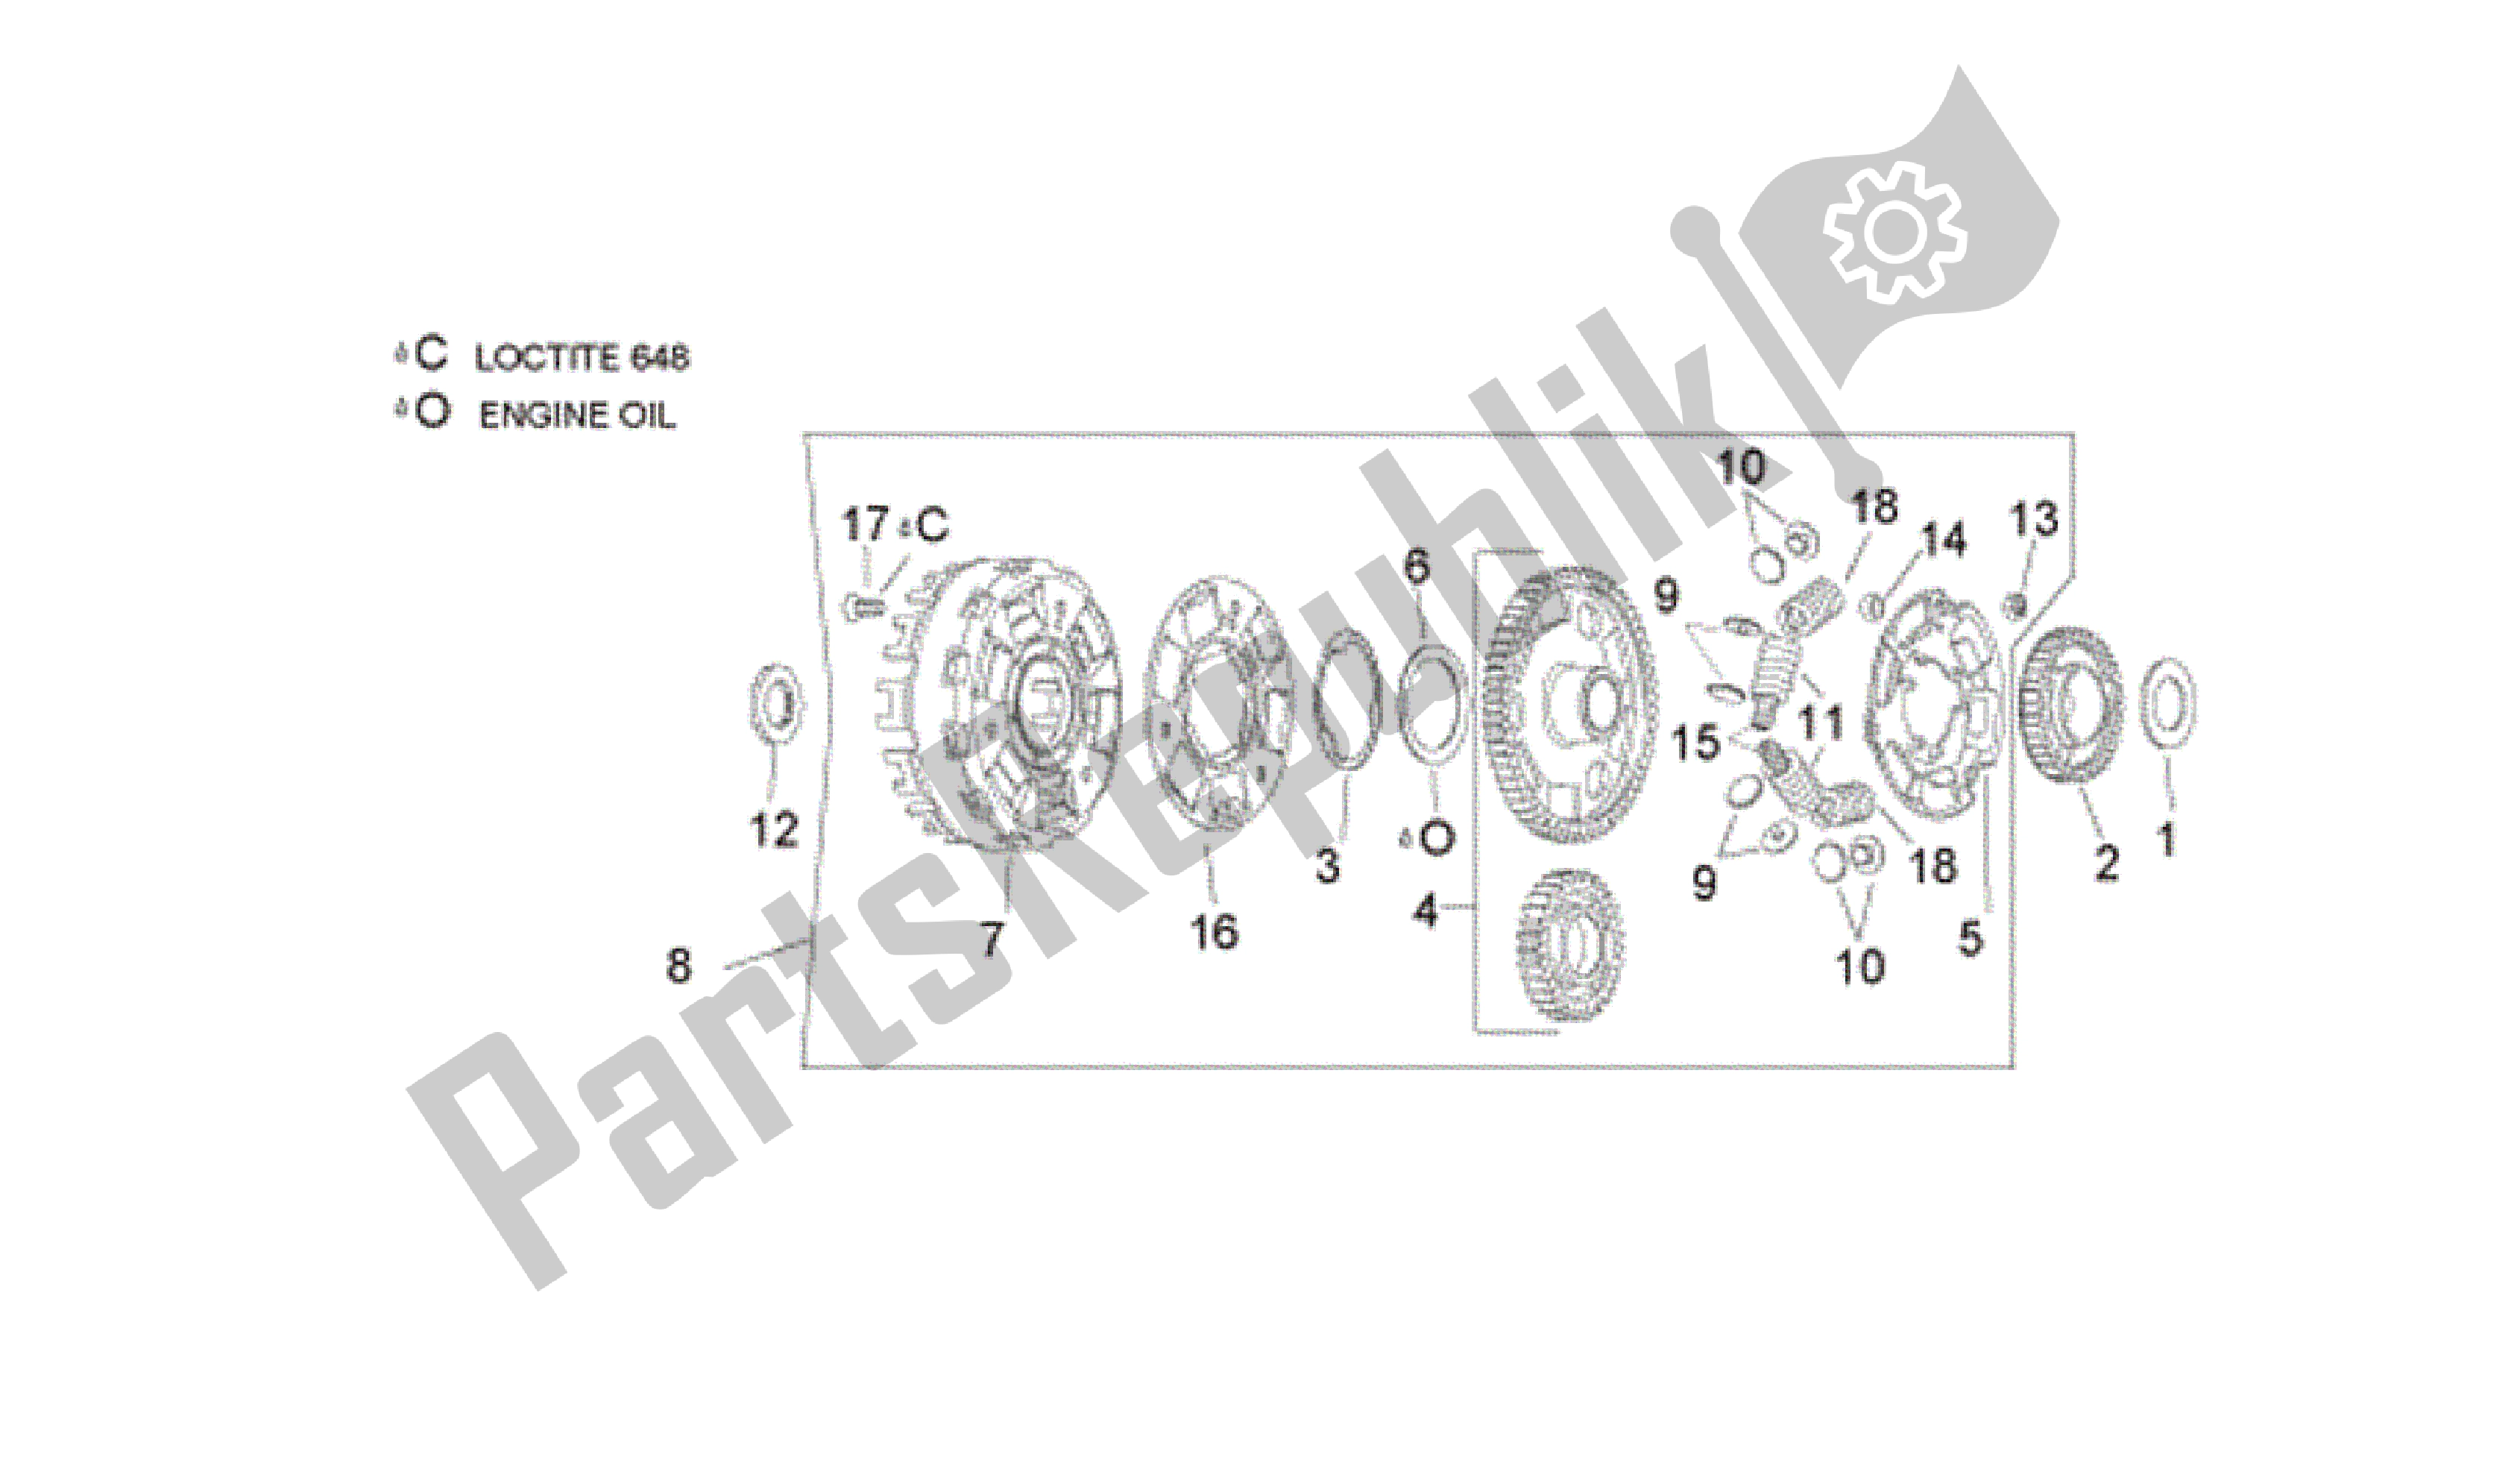 All parts for the Clutch Ii of the Aprilia RSV Tuono R 3985 1000 2006 - 2009